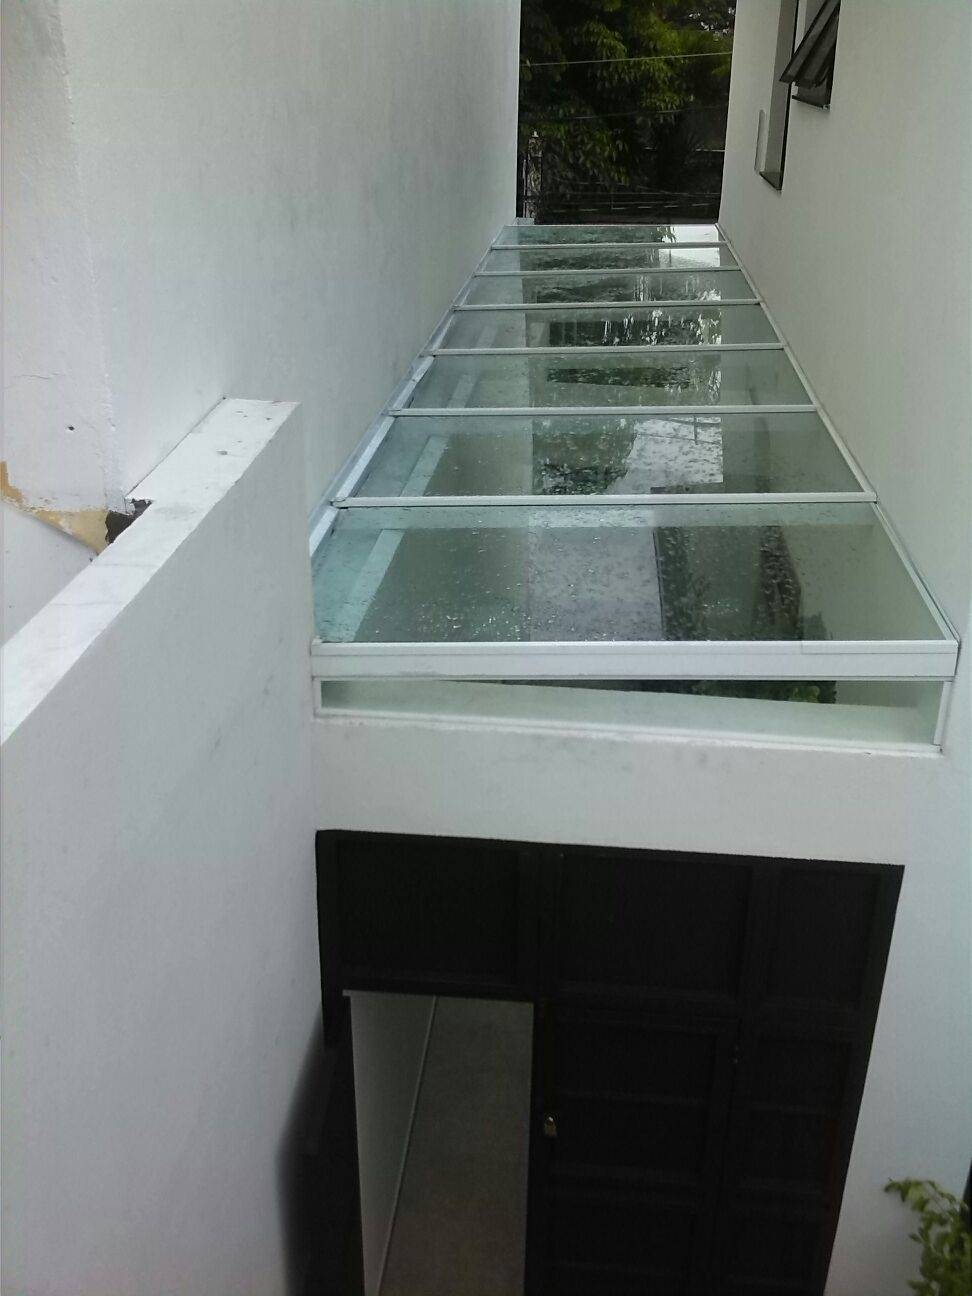 Cobertura de Vidro Temperado Preço em Aricanduva - Cobertura de Vidro Temperado